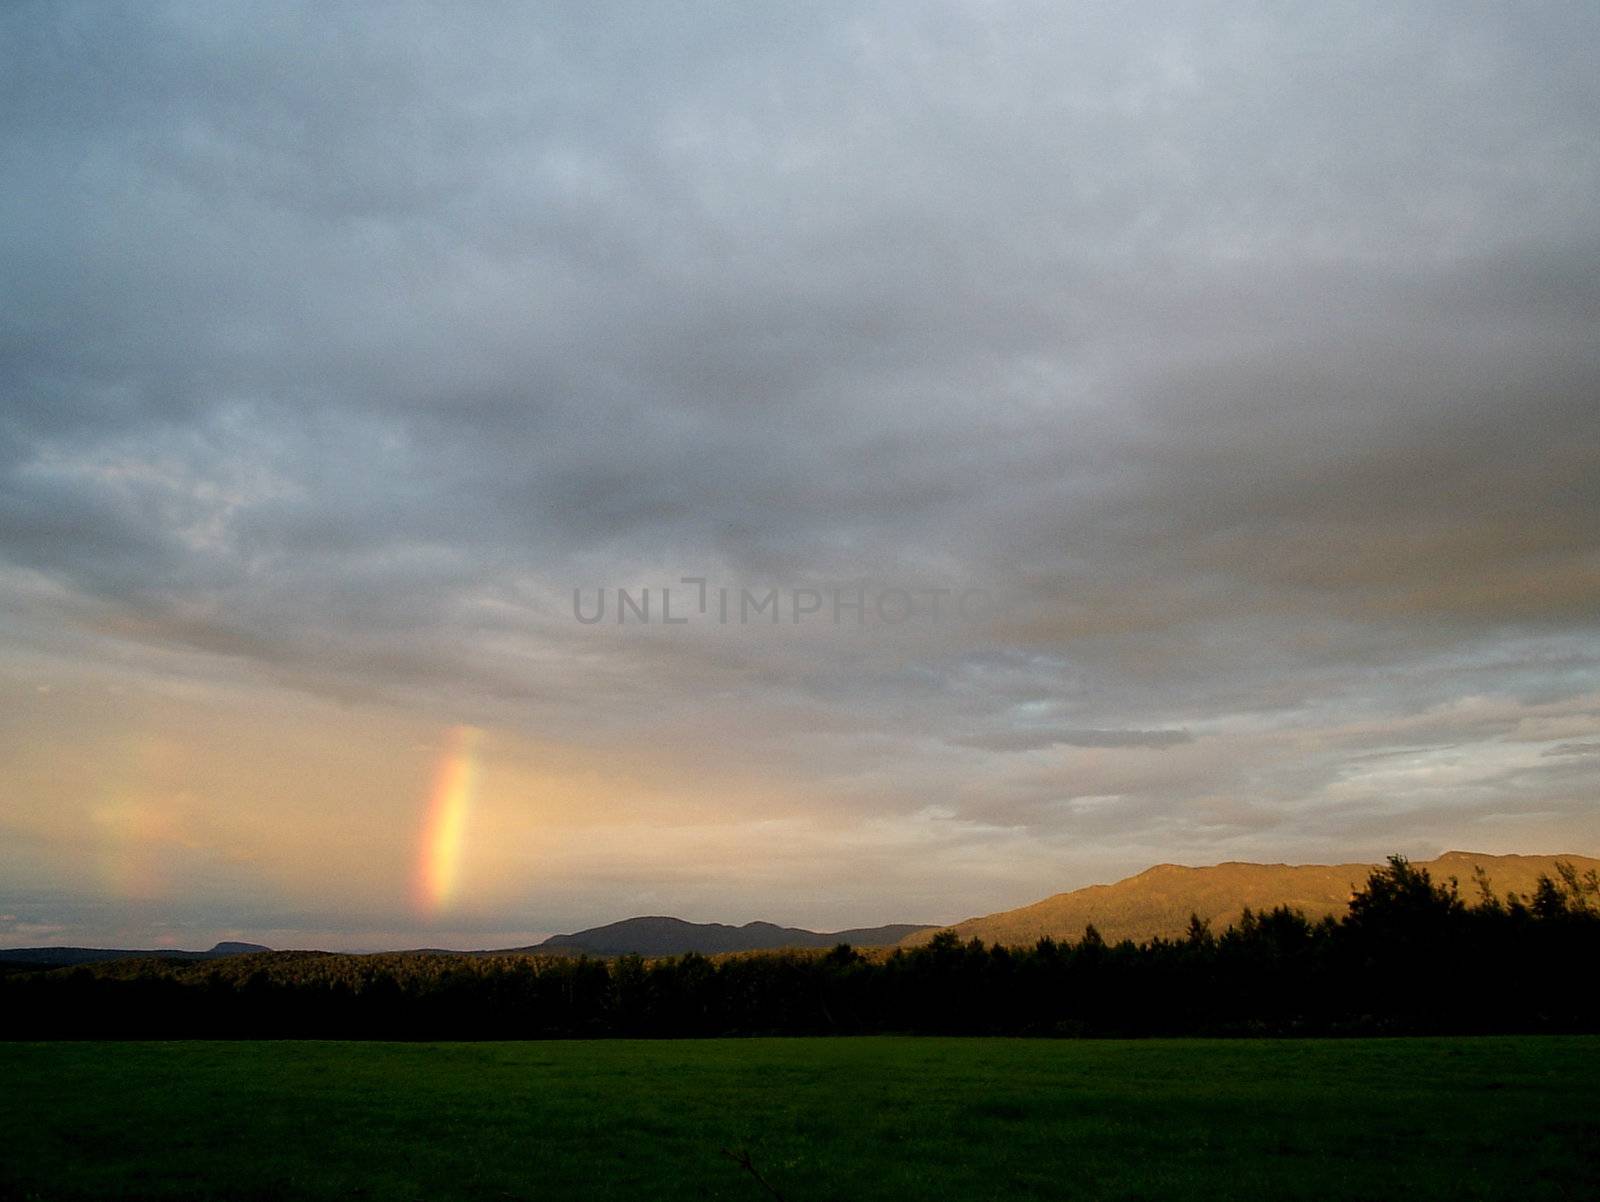 Rainbow_17 by Thorvis